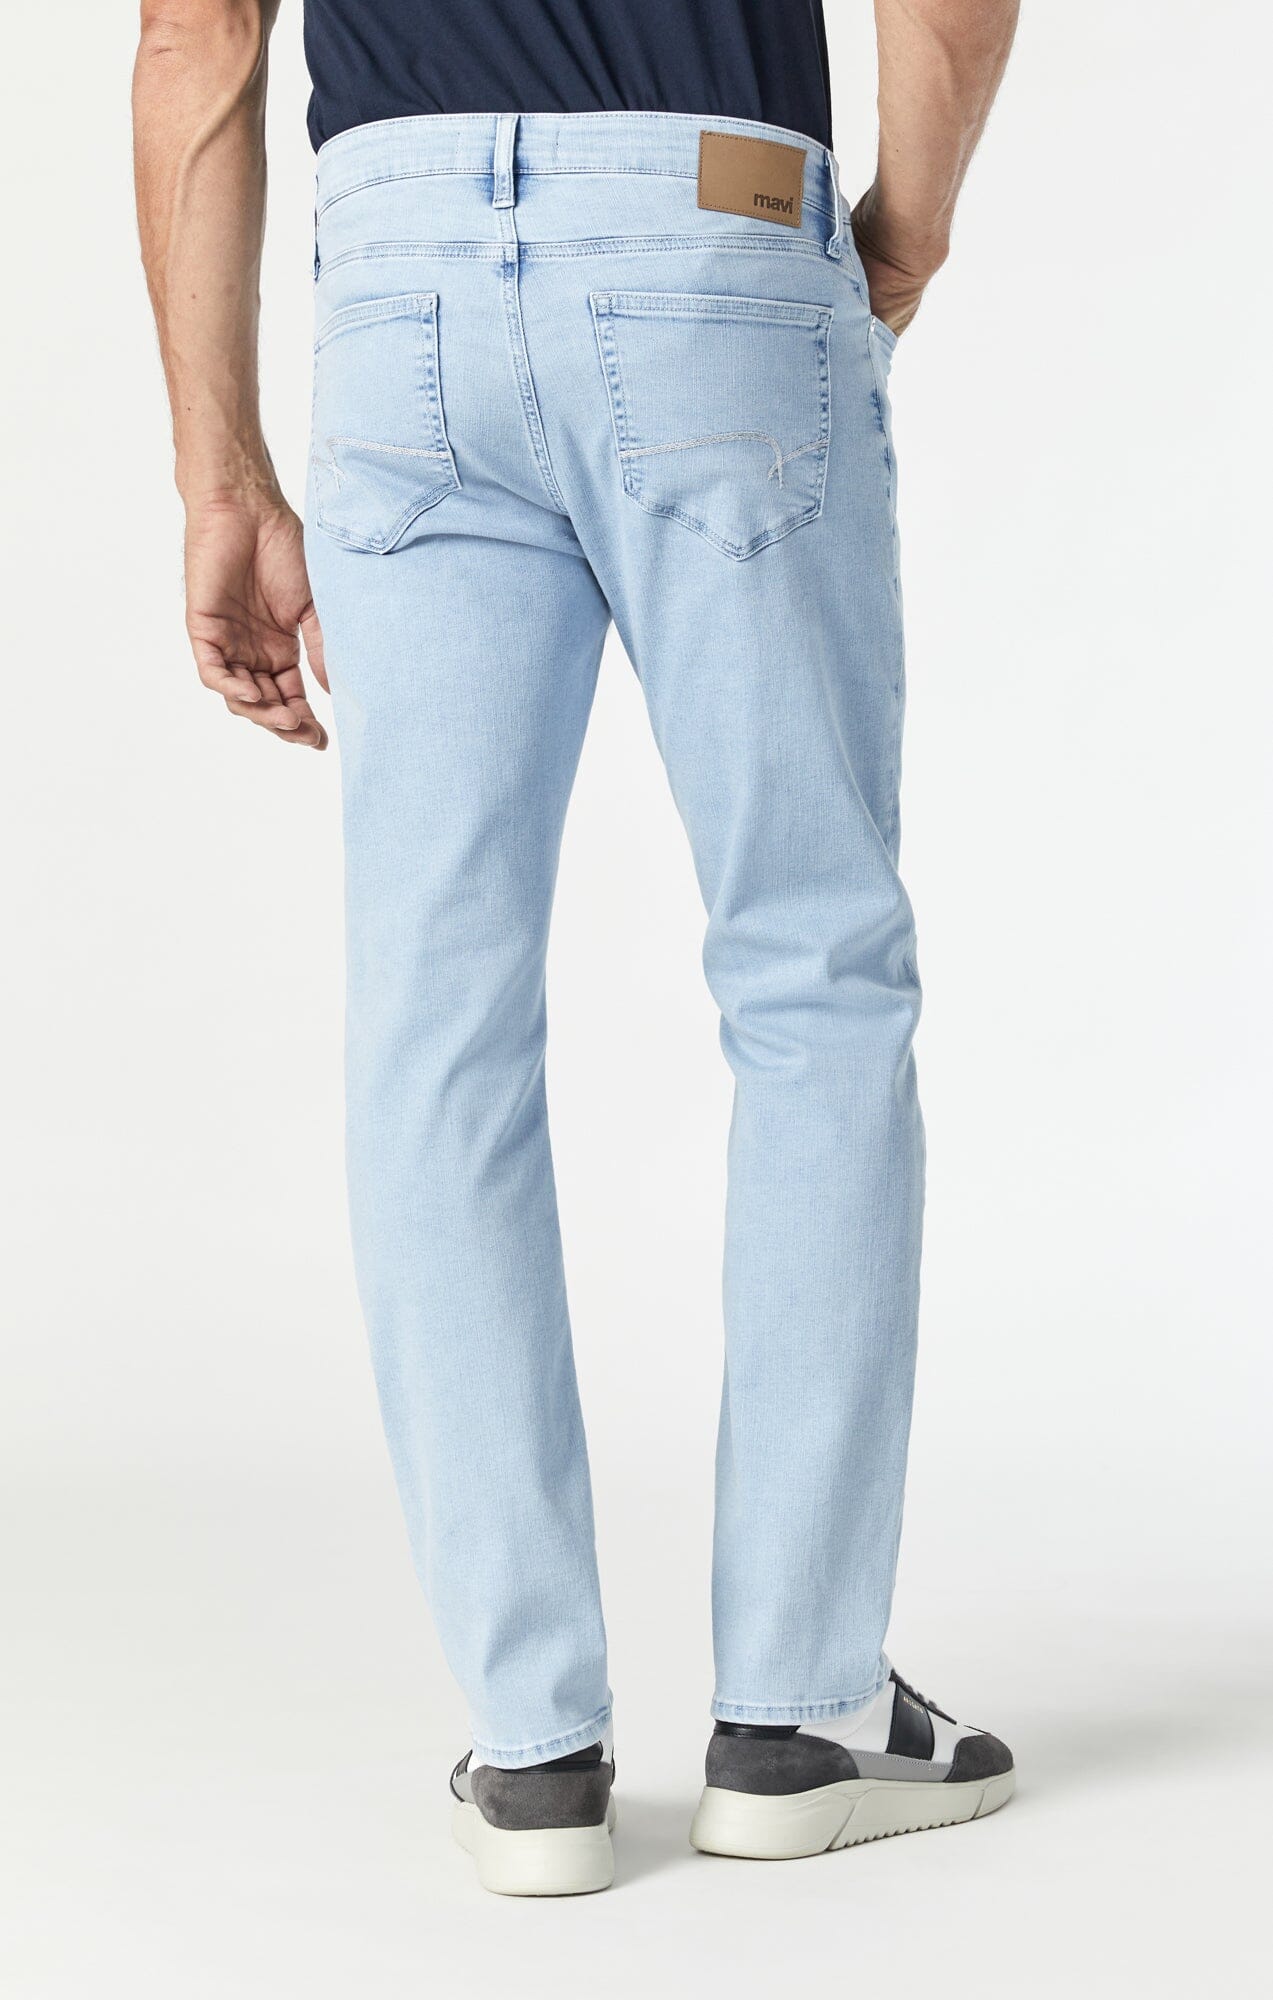 Ankle Fit Light Shade Blue Denim Jeans For men – Peplos Jeans